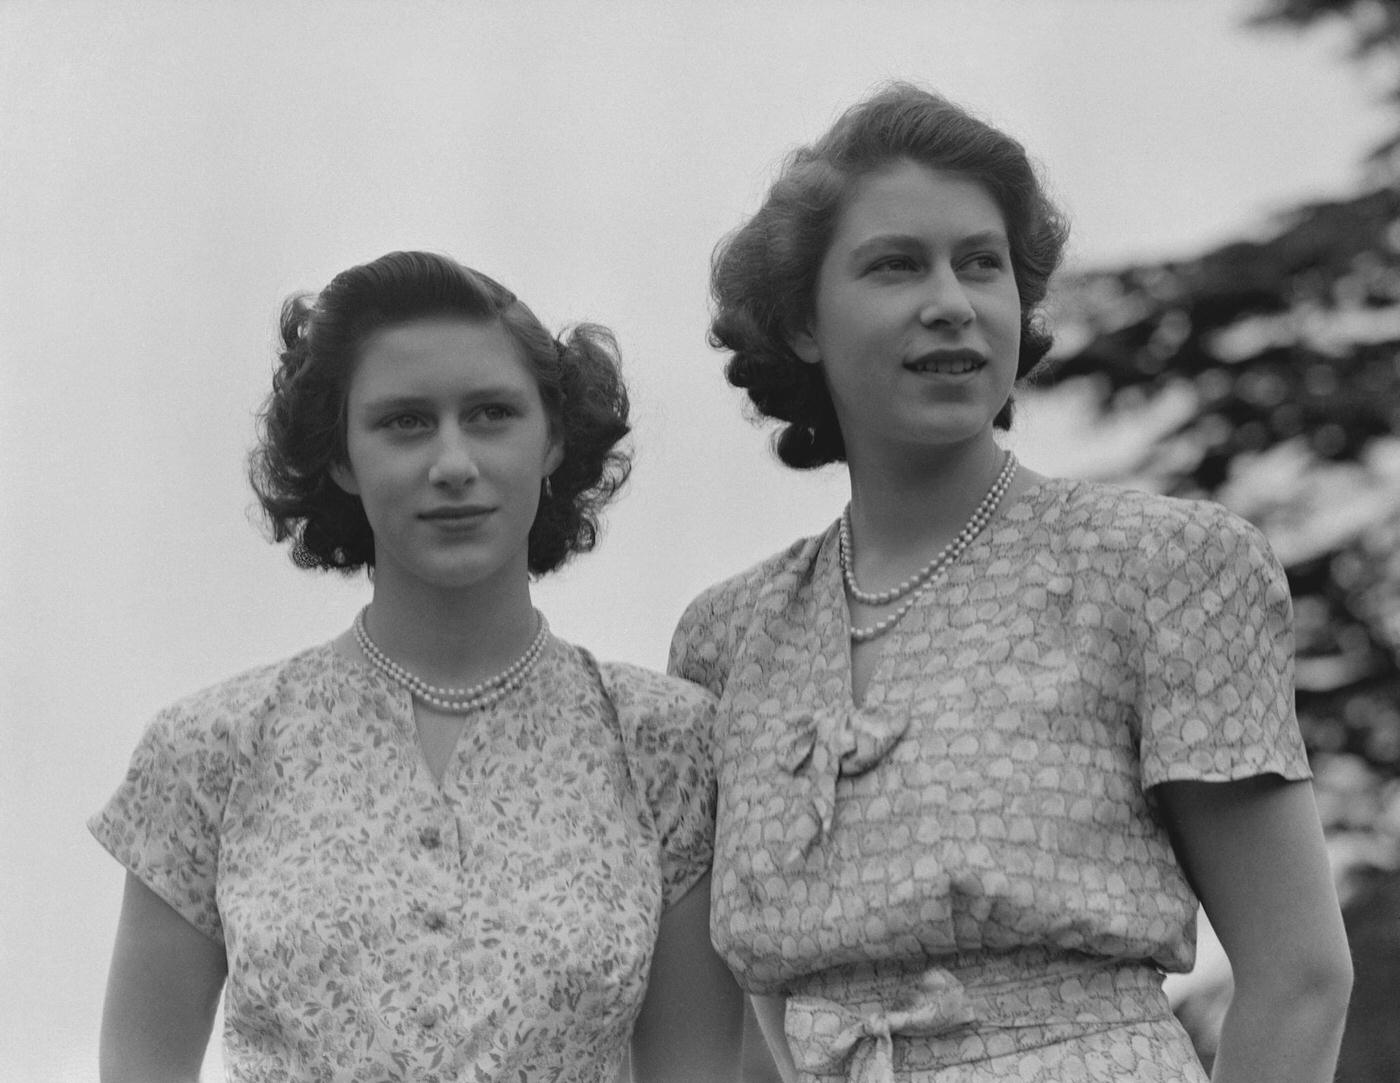 Queen Elizabeth II and Princess Margaret wearing summer dresses, 1942.